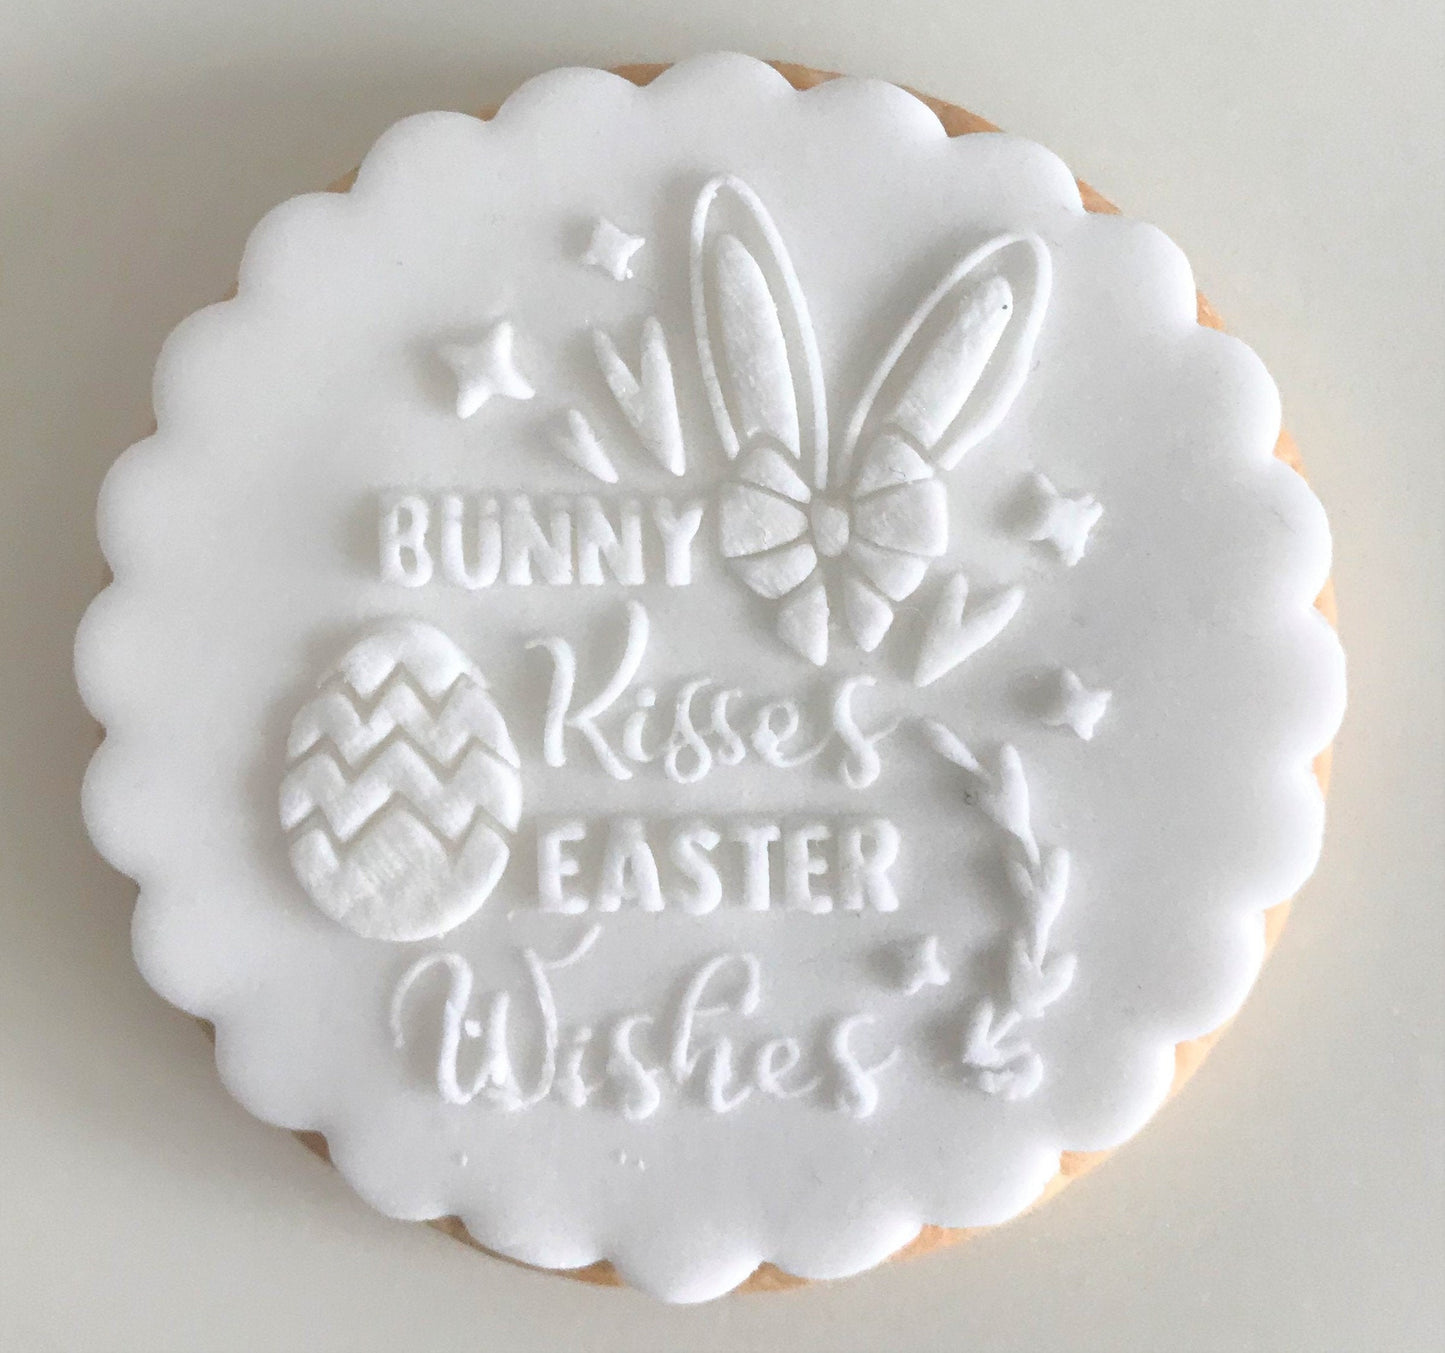 Bunny Kisses Easter Wishes Embosser. BARGAIN STORE